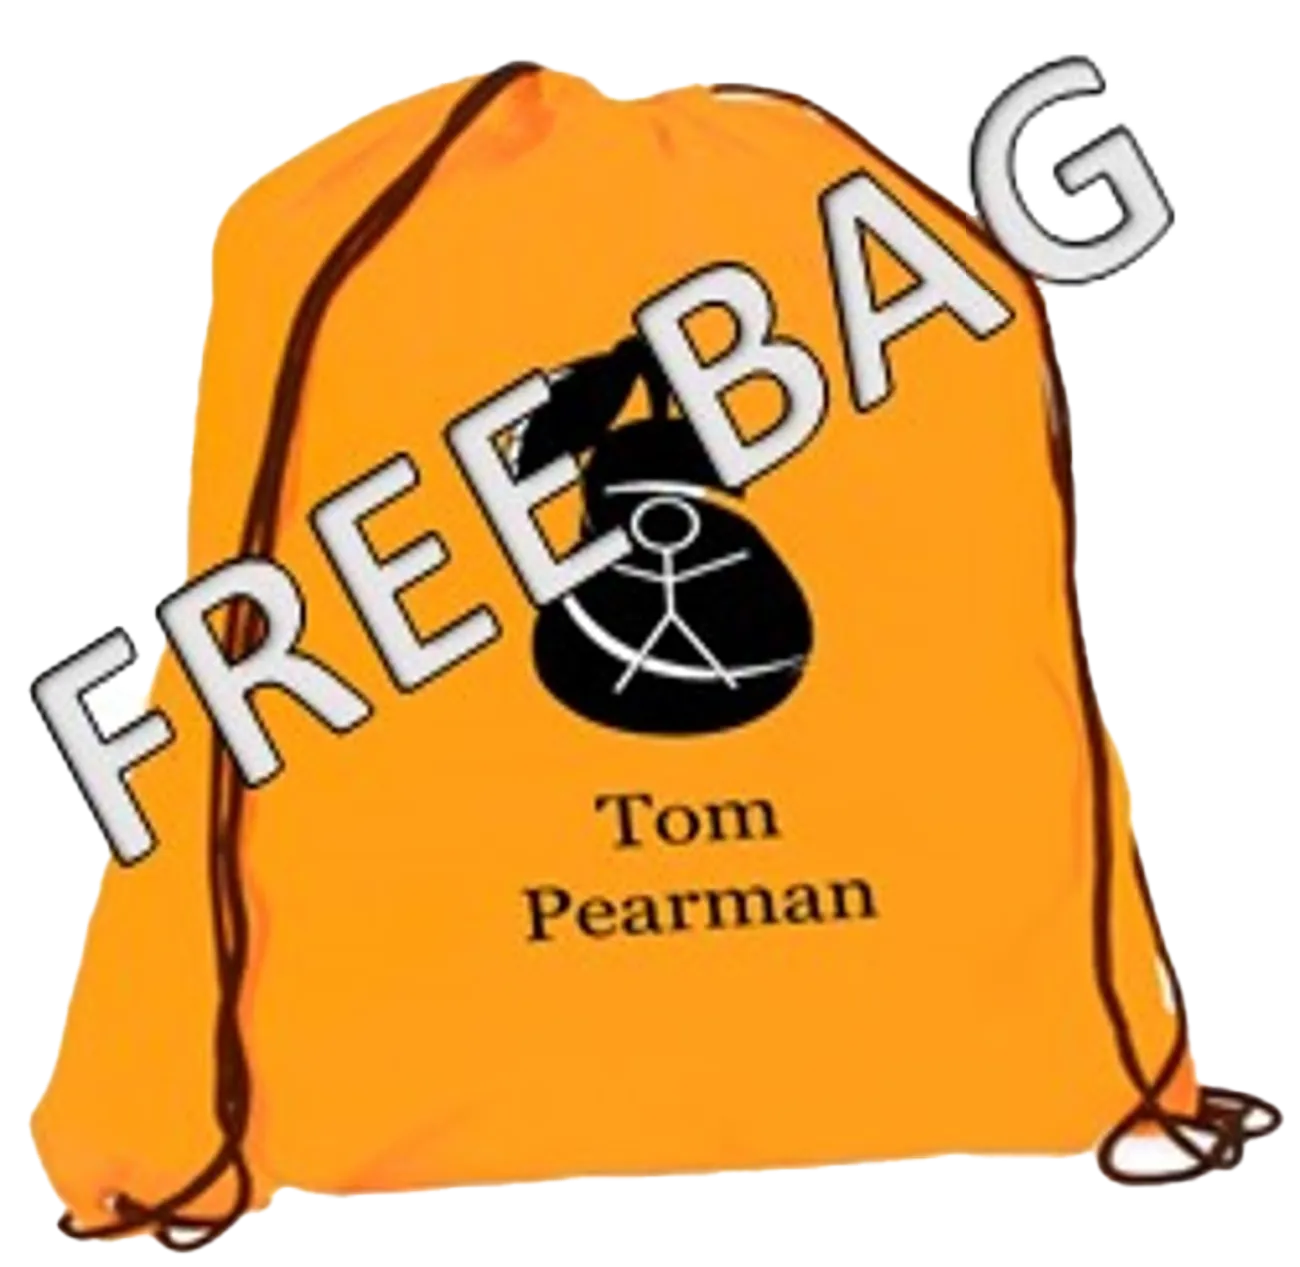 FREE Tom Pearman Drawstring bag